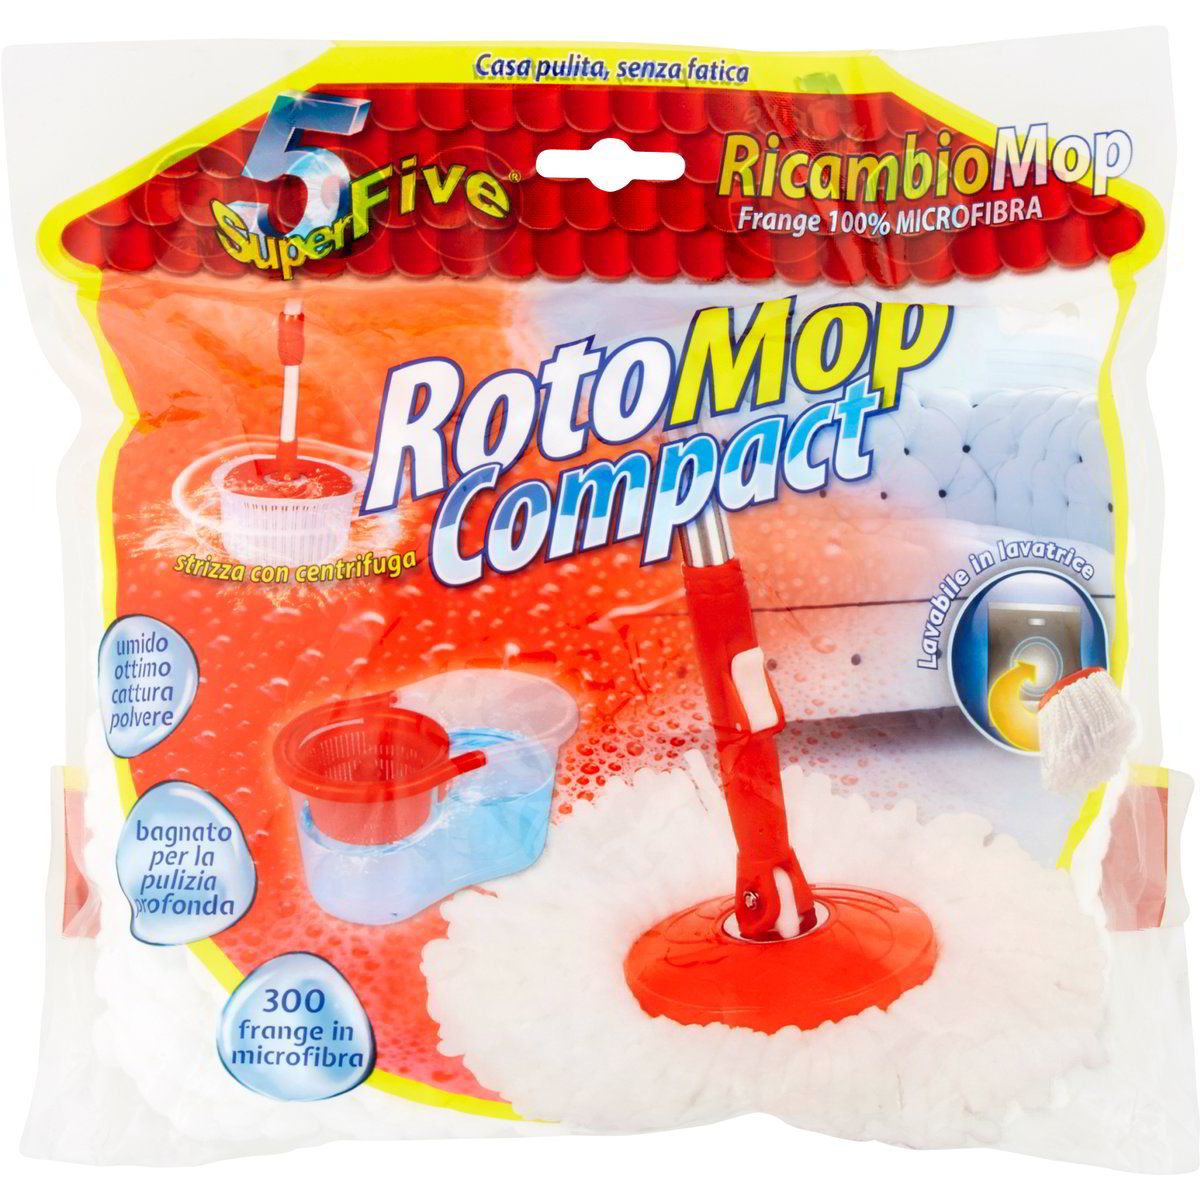 Rotomop Roto Mop Superfive Mocio X5 | LGV Shopping